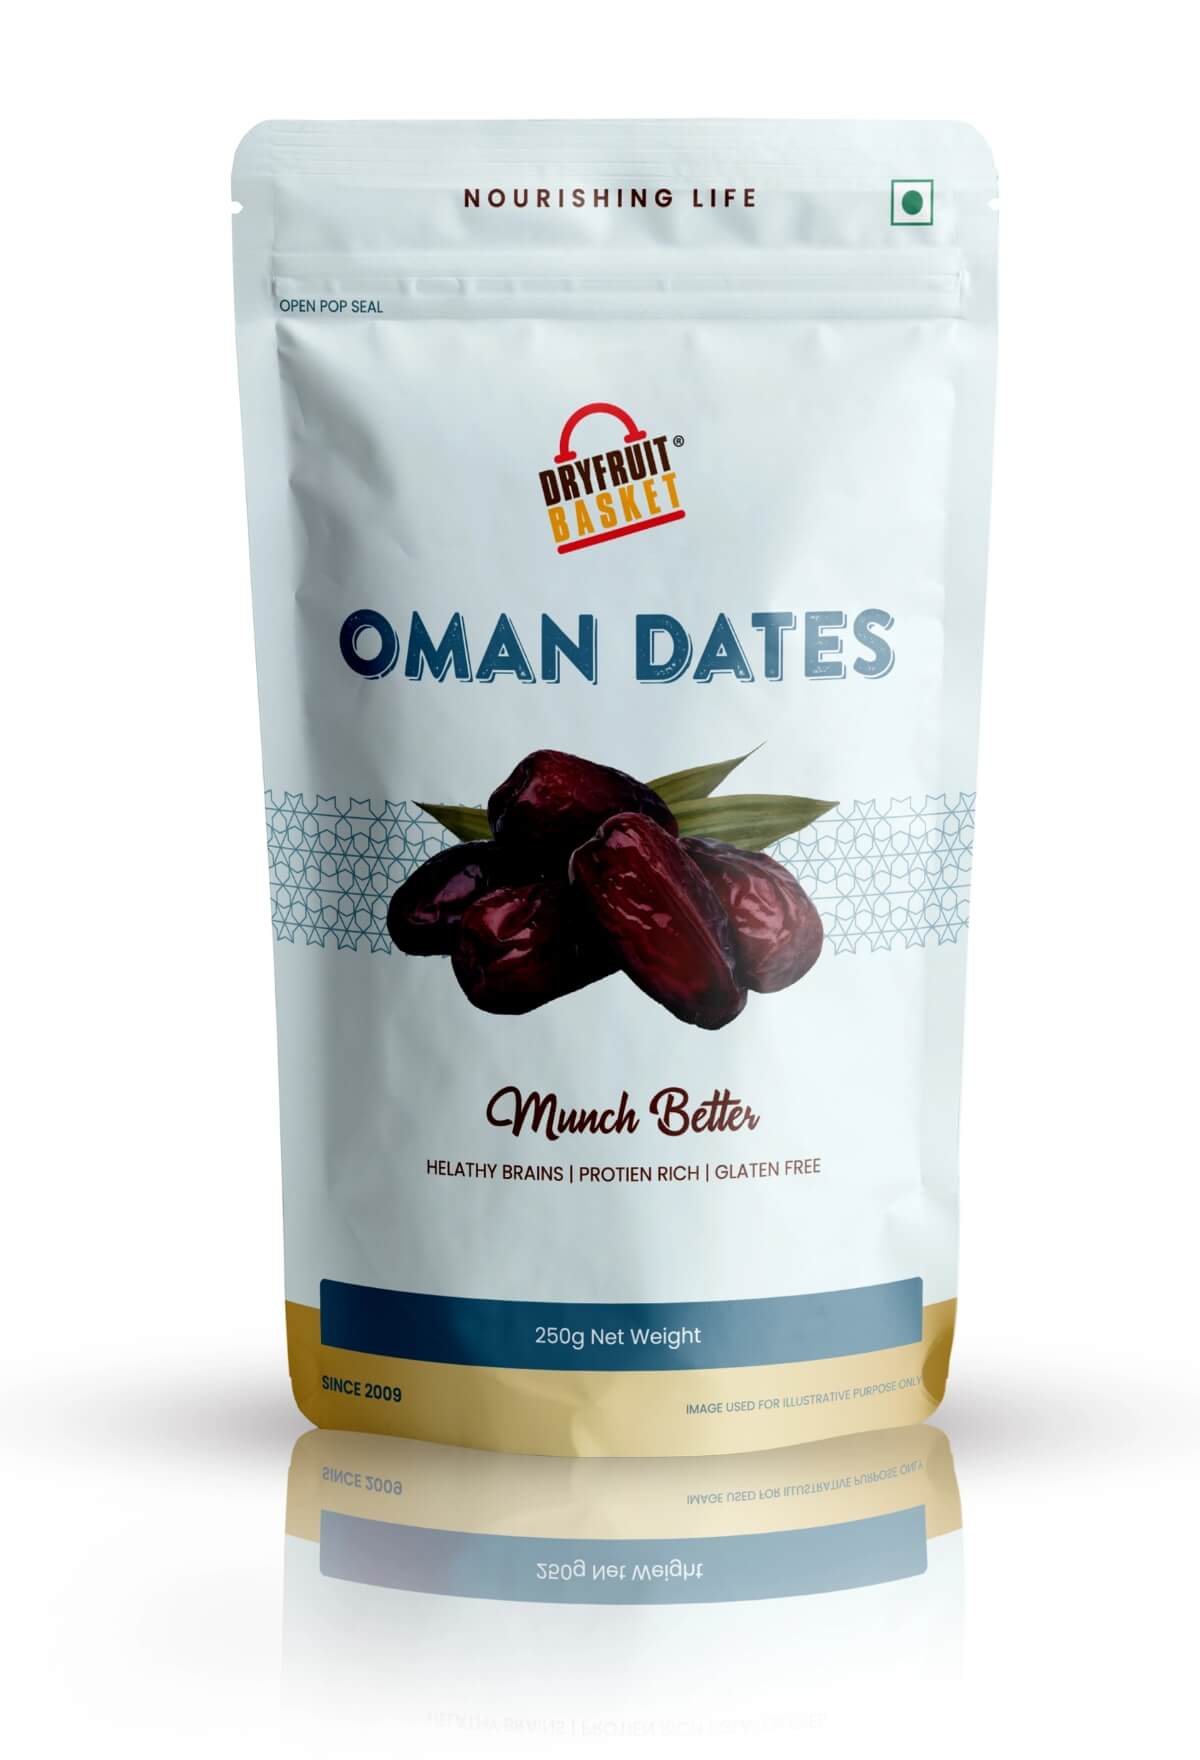 Buy Oman Dates Online